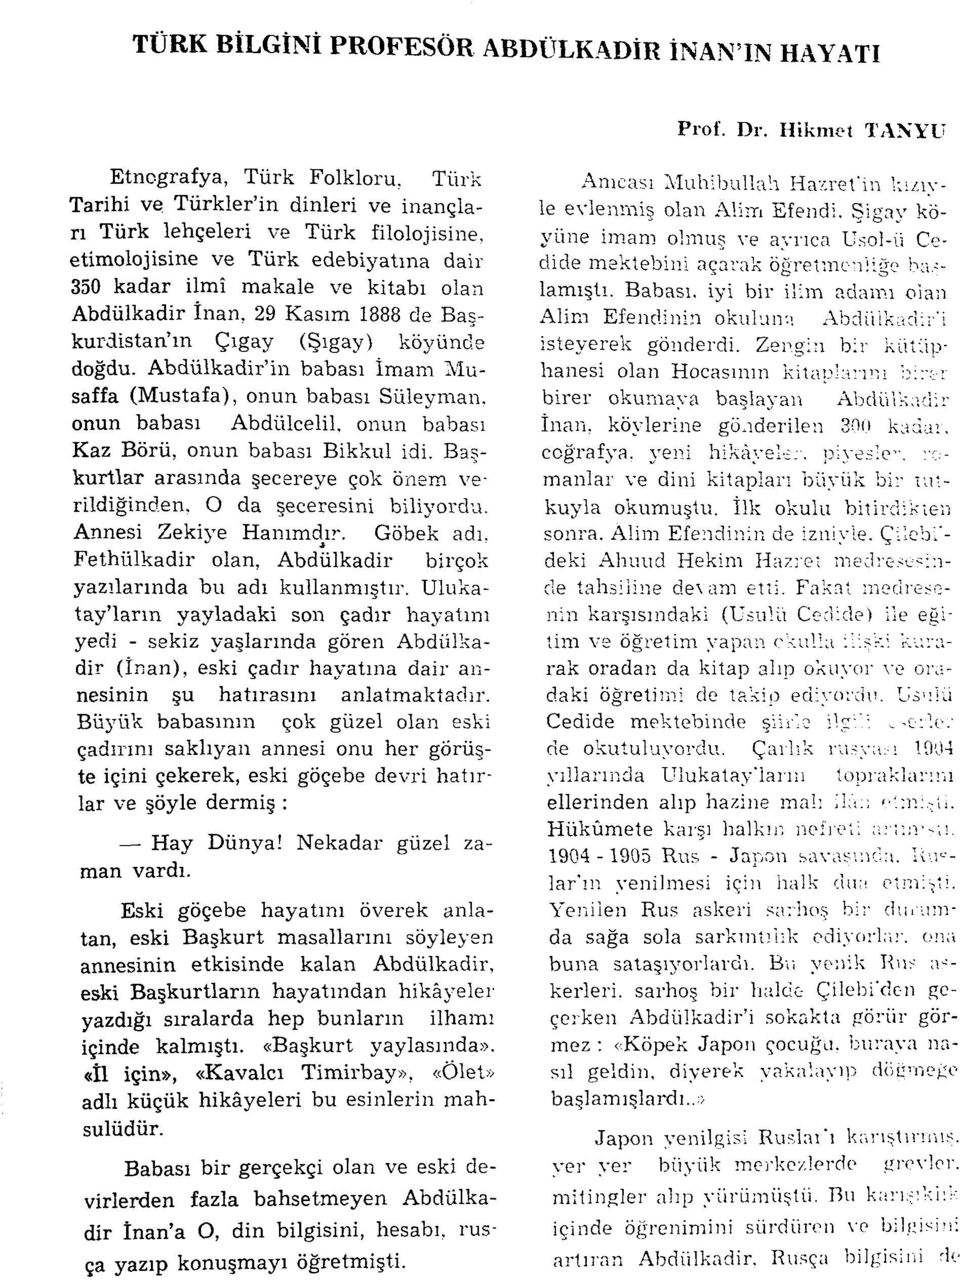 Abdülkadir înan, 29 Kasım 1888 de Başkurdistan'm Çıgay (Şıgay) köyünde doğdu. Abdülkadir'in babası İmam Musaffa (Mustafa), onun babası Süleyman, onun babası Abdülcelil.